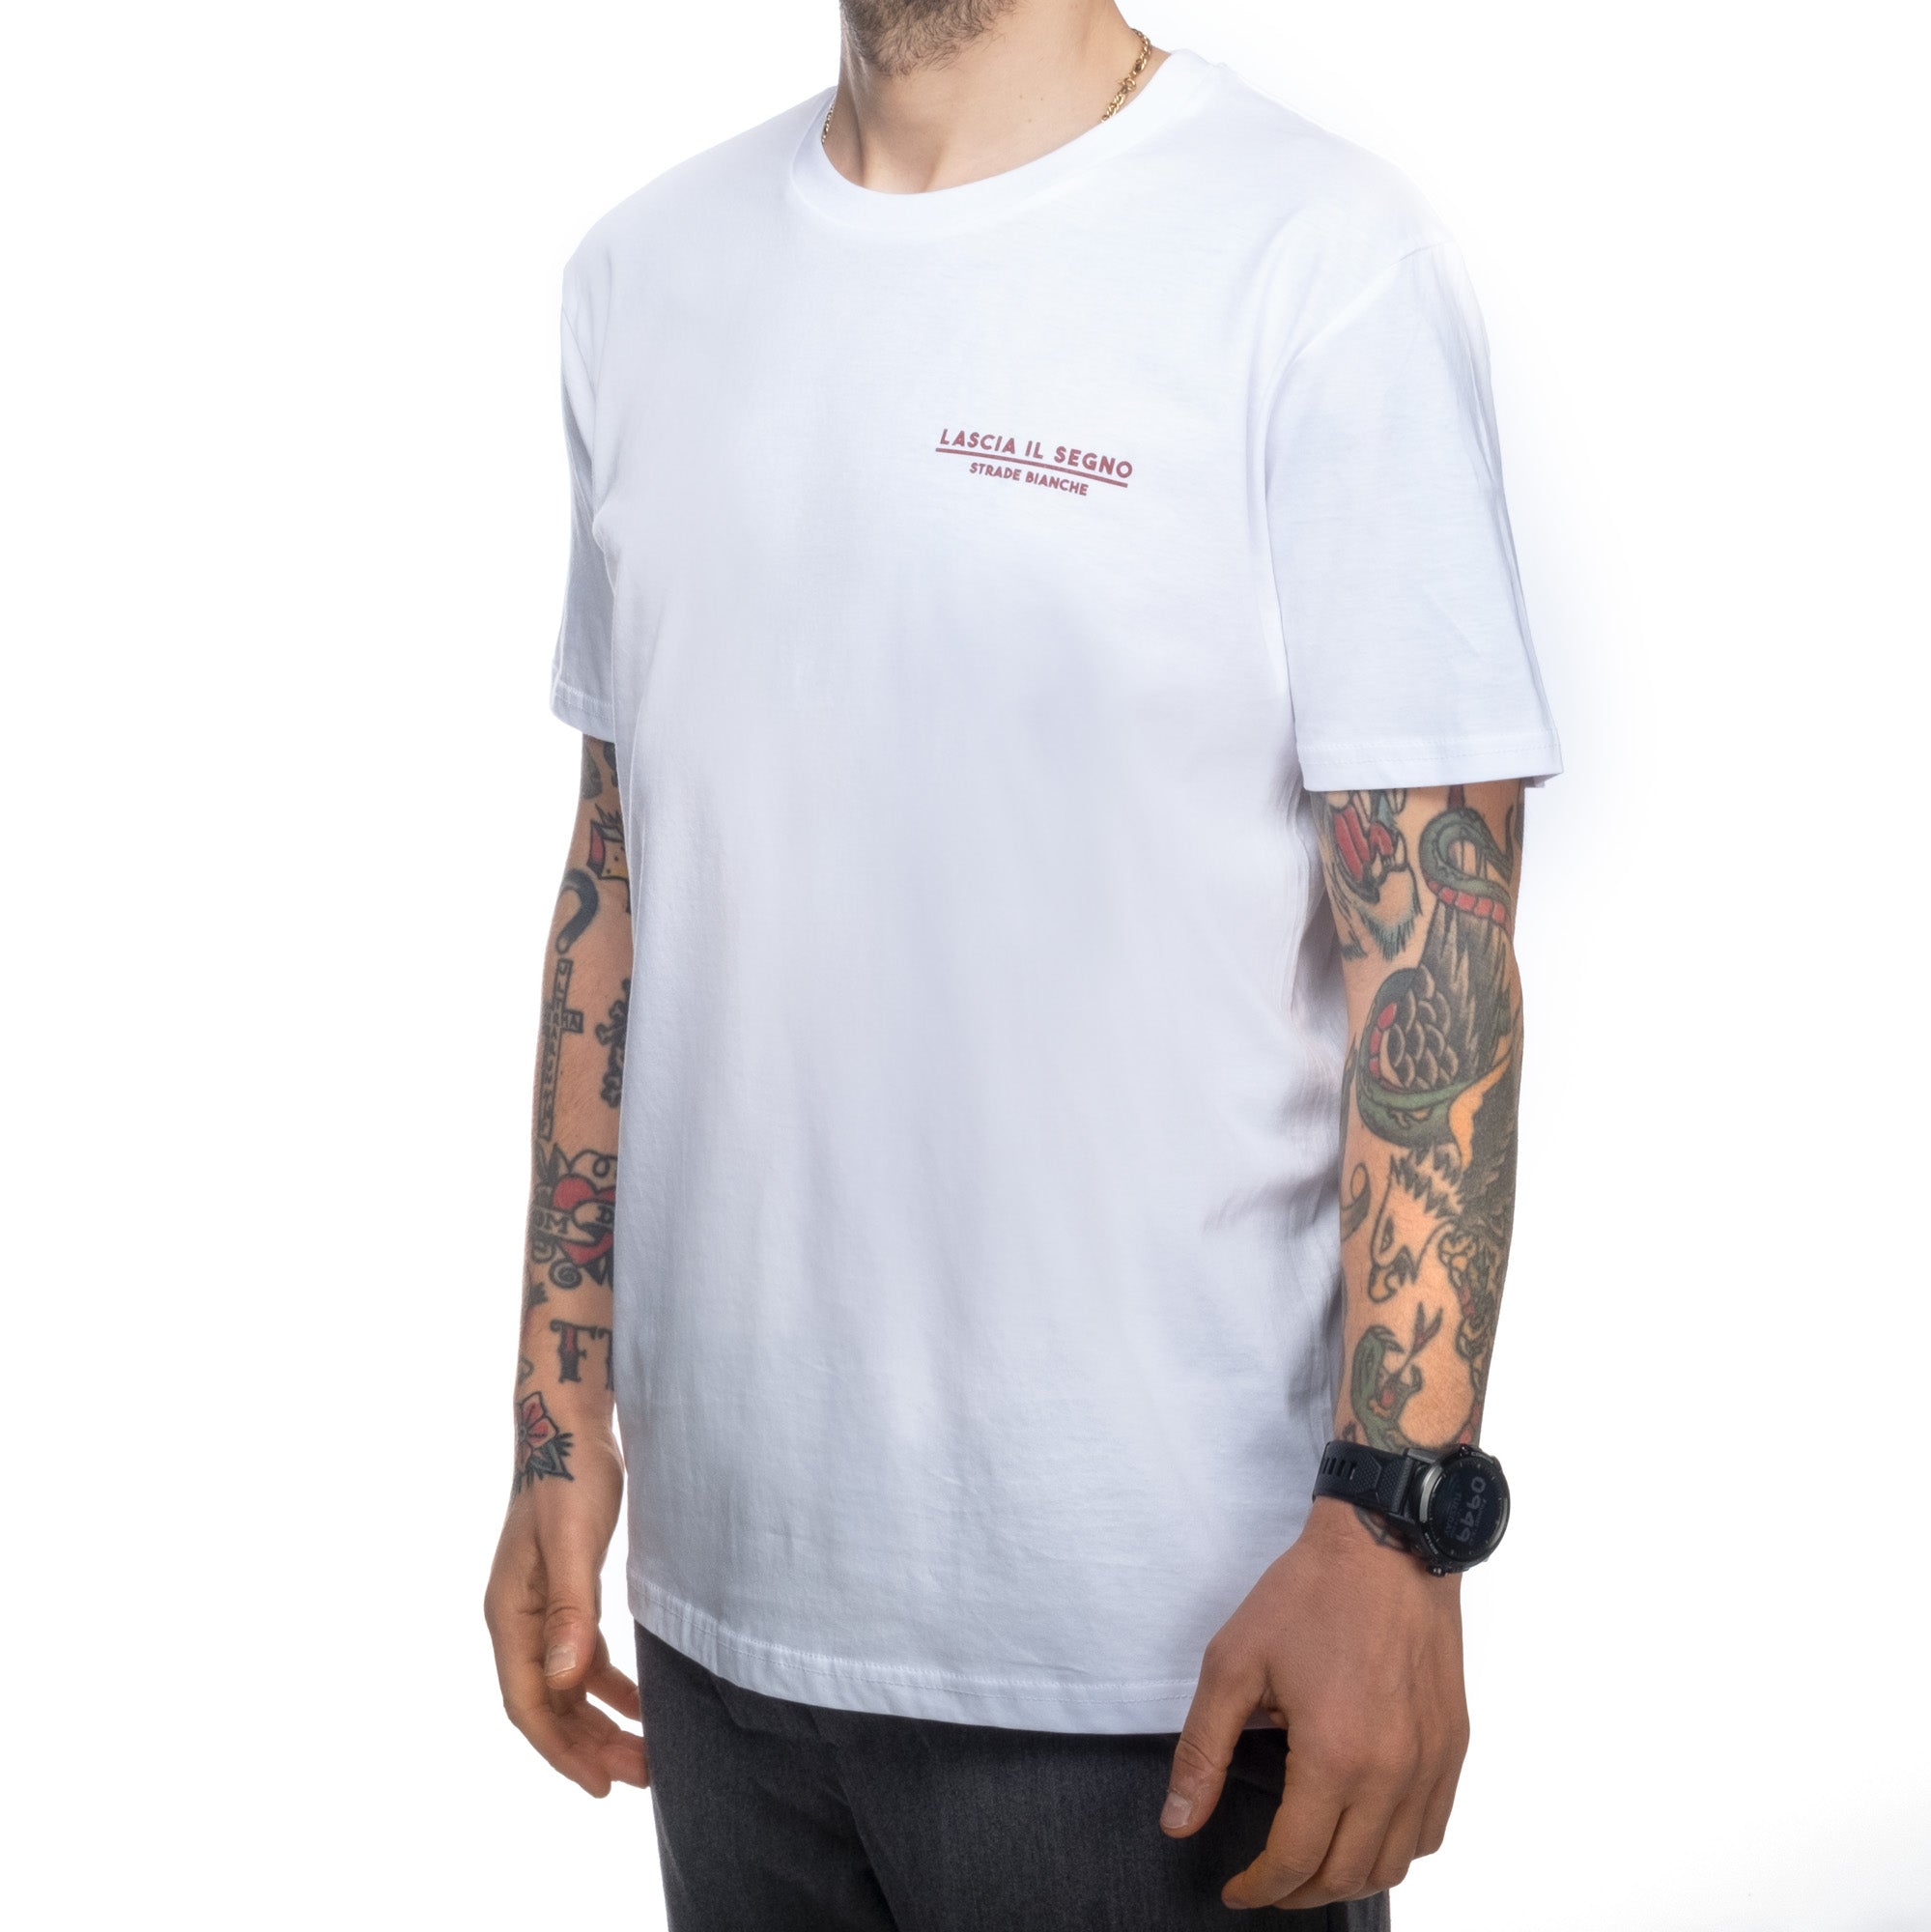 Strade Bianche T-Shirt - Hinterlasse deine Spuren